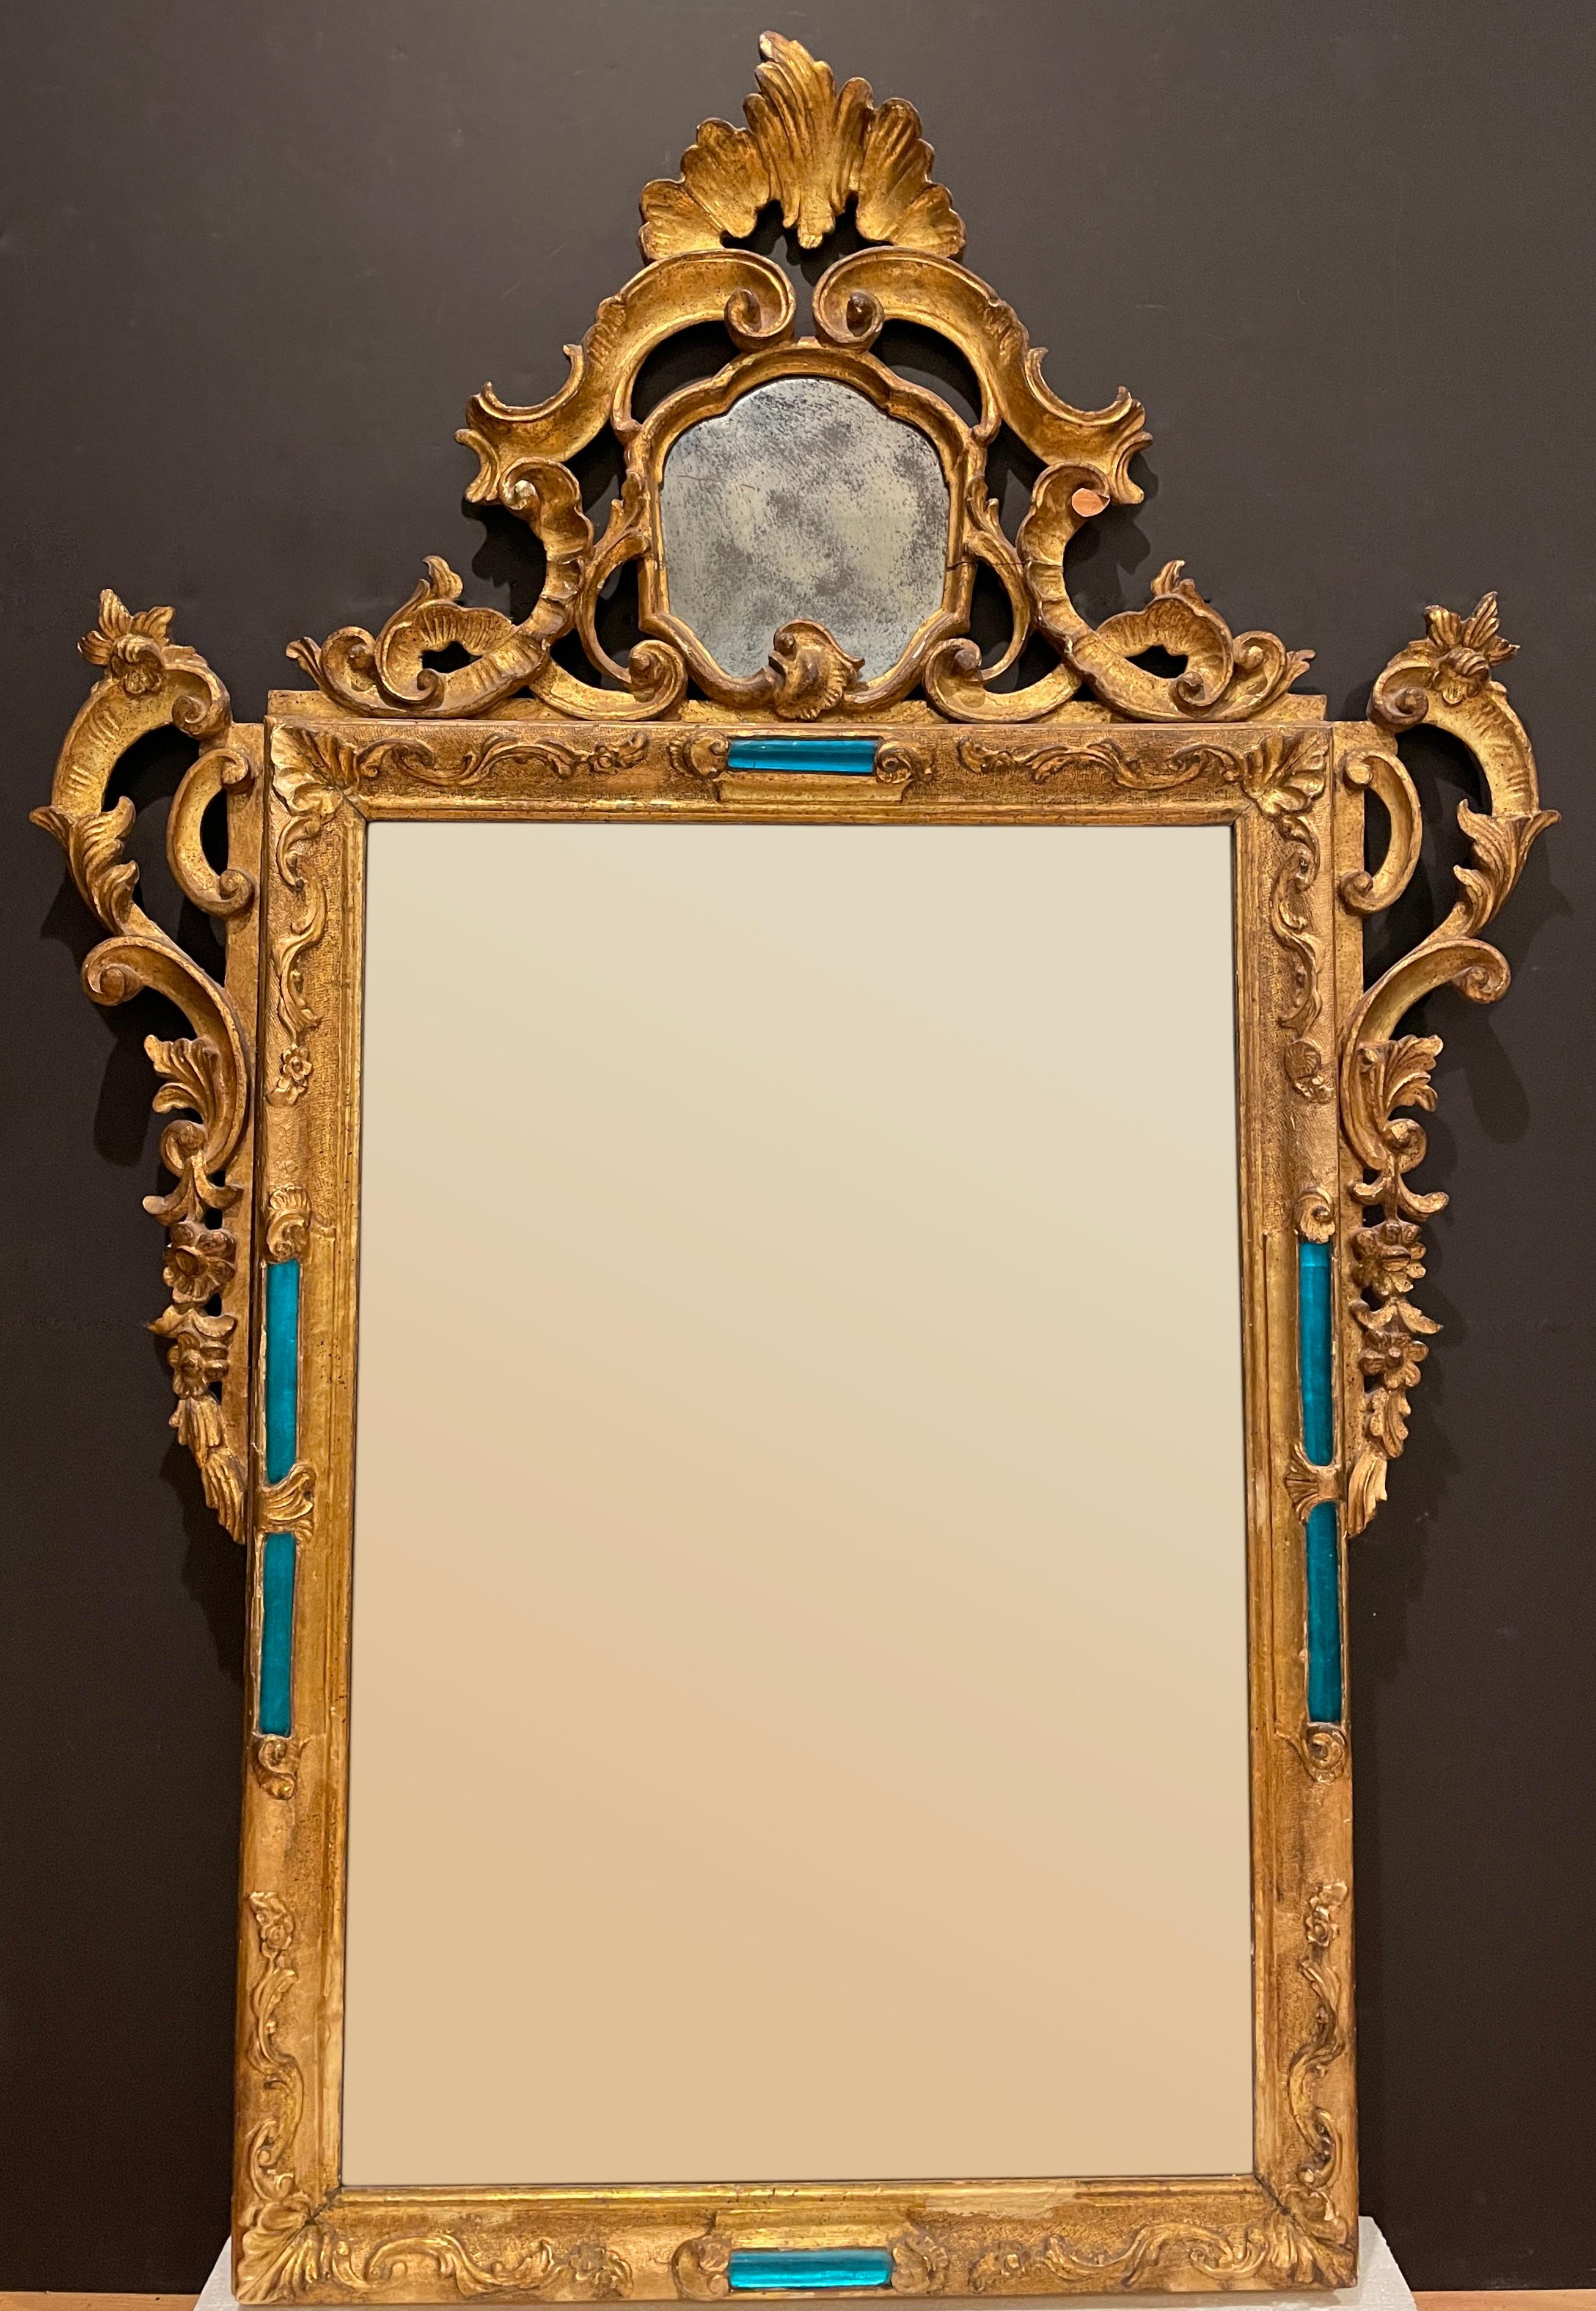 Très rare miroir en bois doré sculpté de style baroque rococo vénitien du XIXe siècle. Comprenant deux panneaux de miroir et des baguettes en verre soufflé bleu aqua/bleu et un miroir original avec des zones de pertes d'argent tachetées.